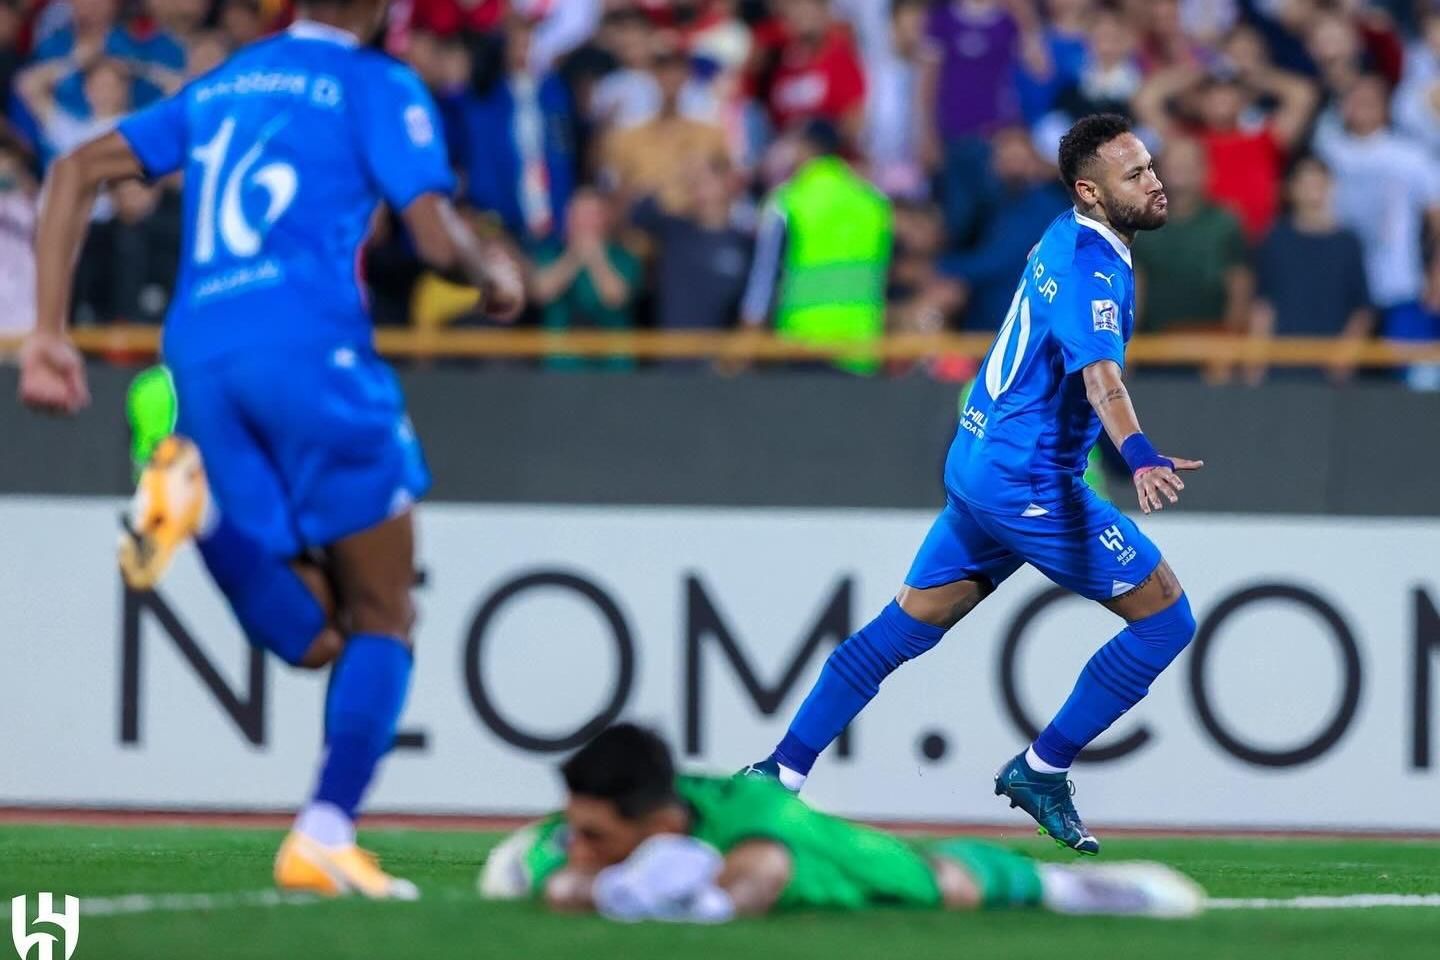 Uefa coloca Malcom entre 50 promessas para ficar de olho em 2018